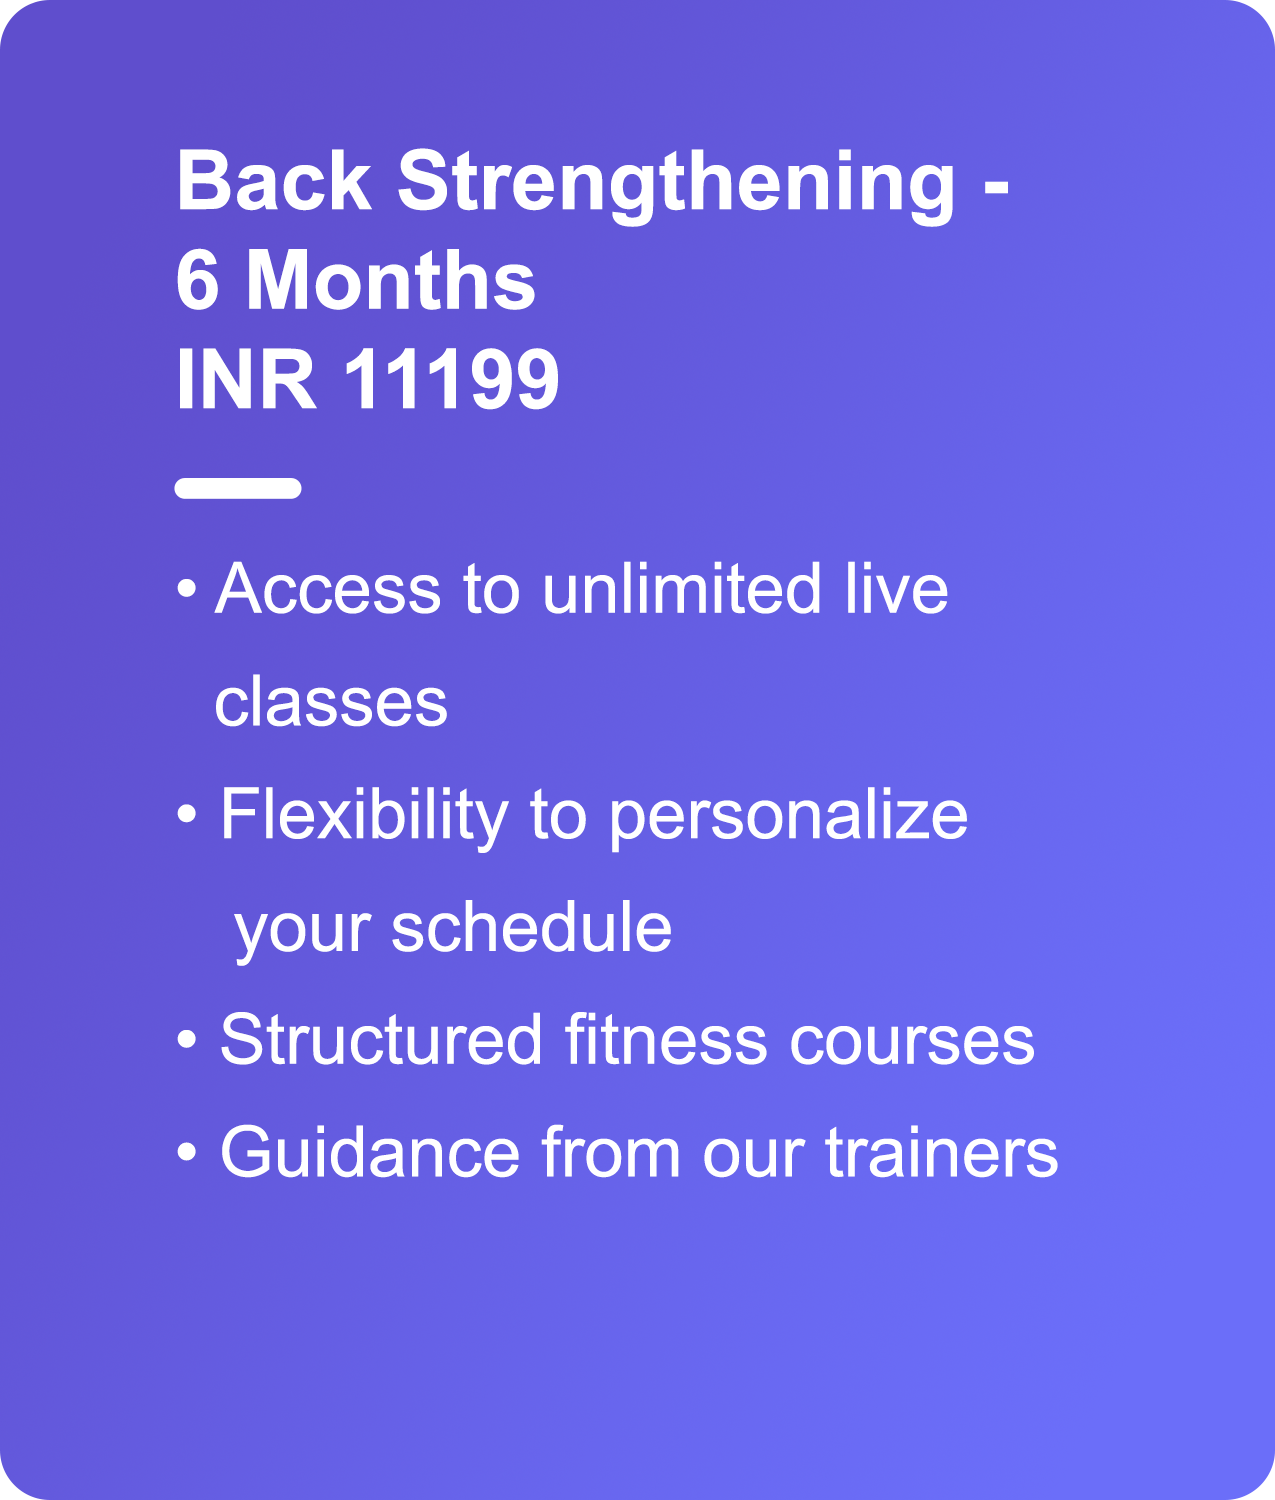 Yoga For Back Strengthening - Yogwise